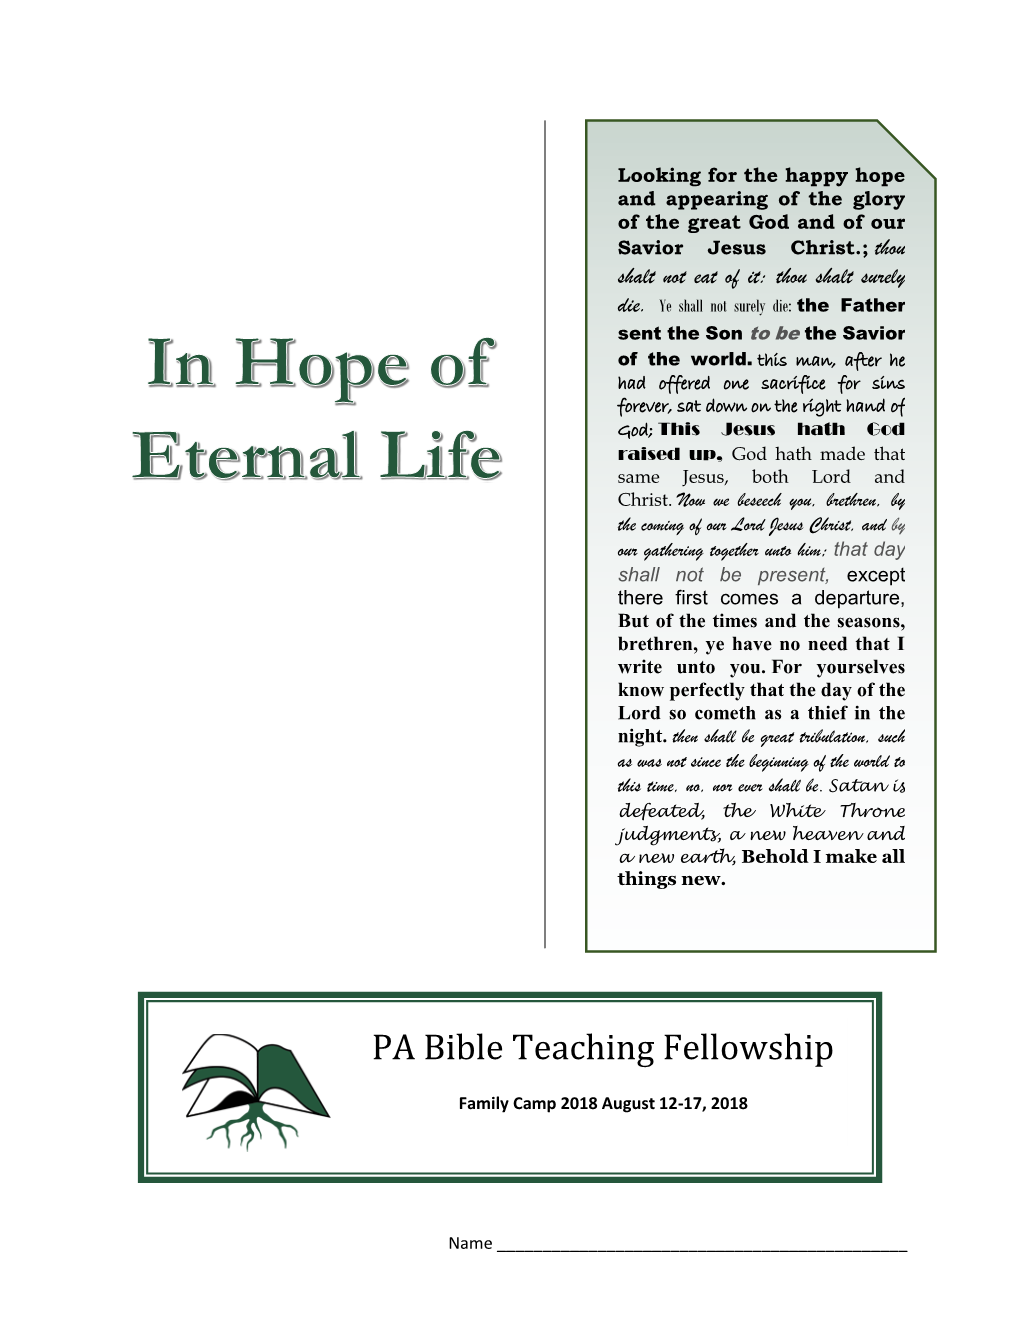 In Hope of Eternal Life